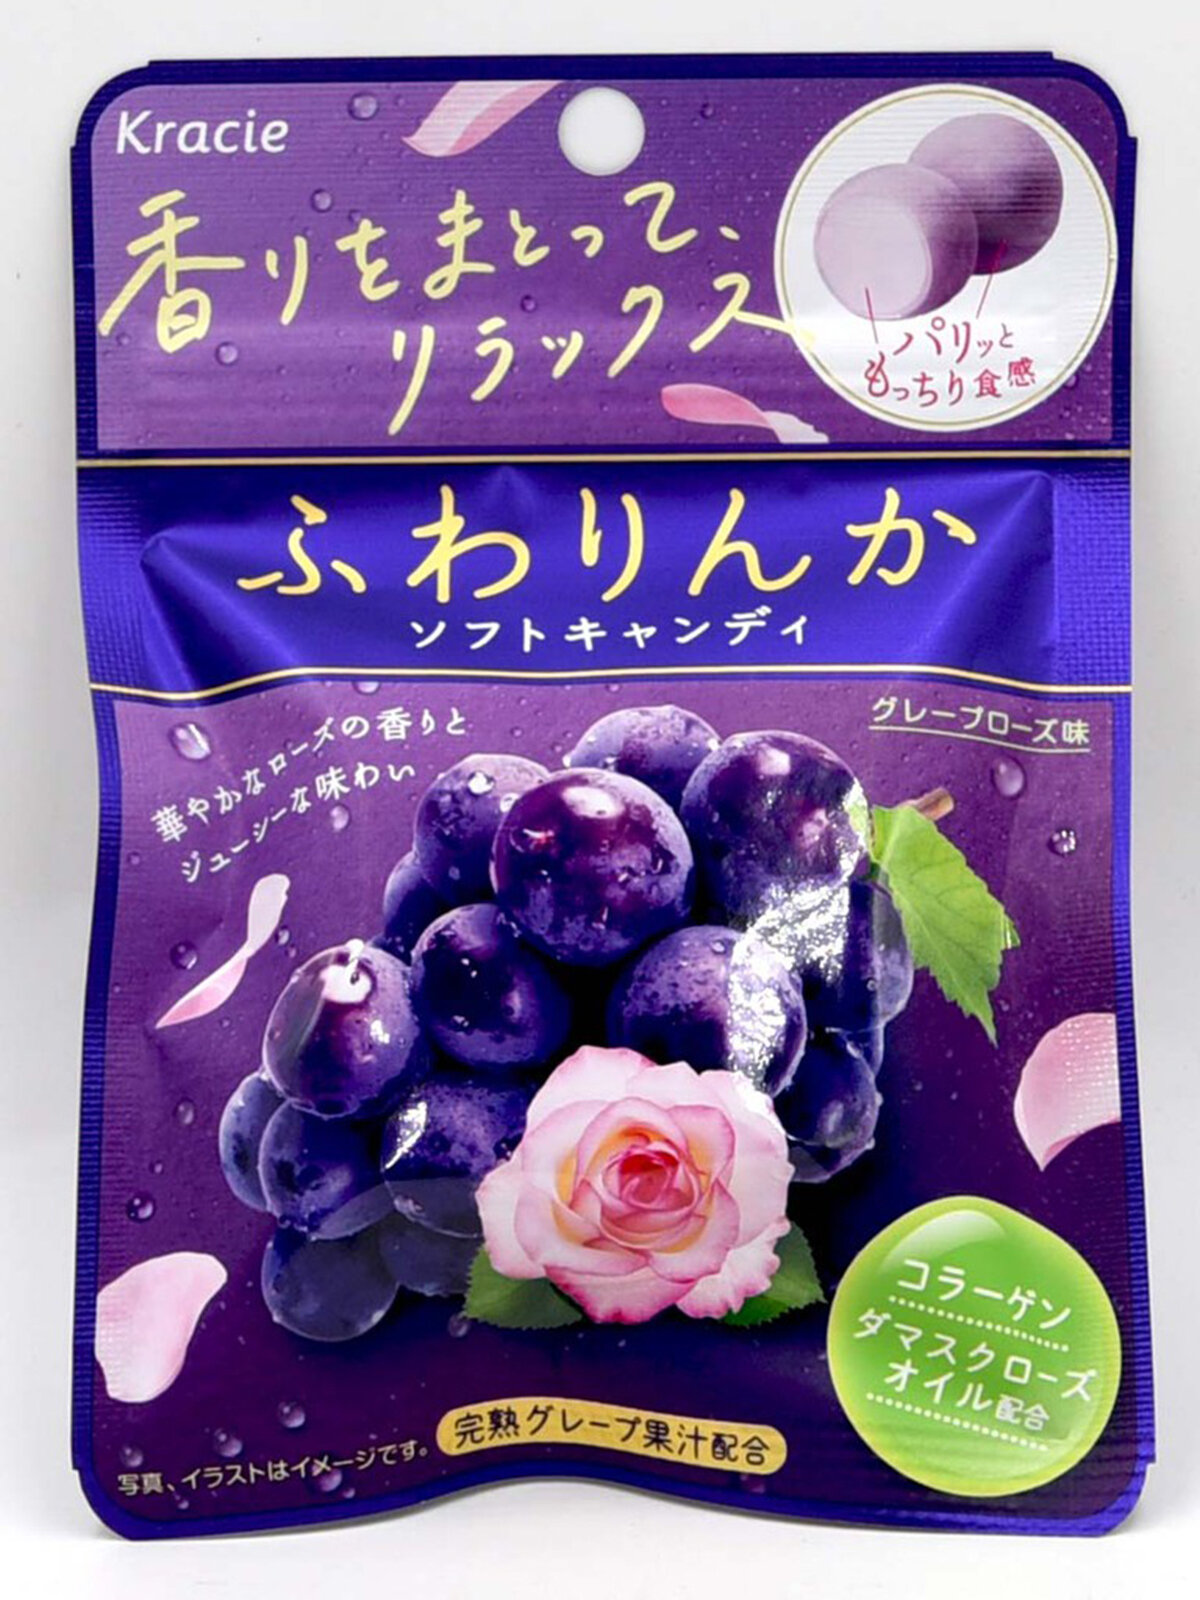 Японские Конфеты красоты с коллагеном и маслом розы Kracie, со вкусом винограда / Коллаген / Витамин С /